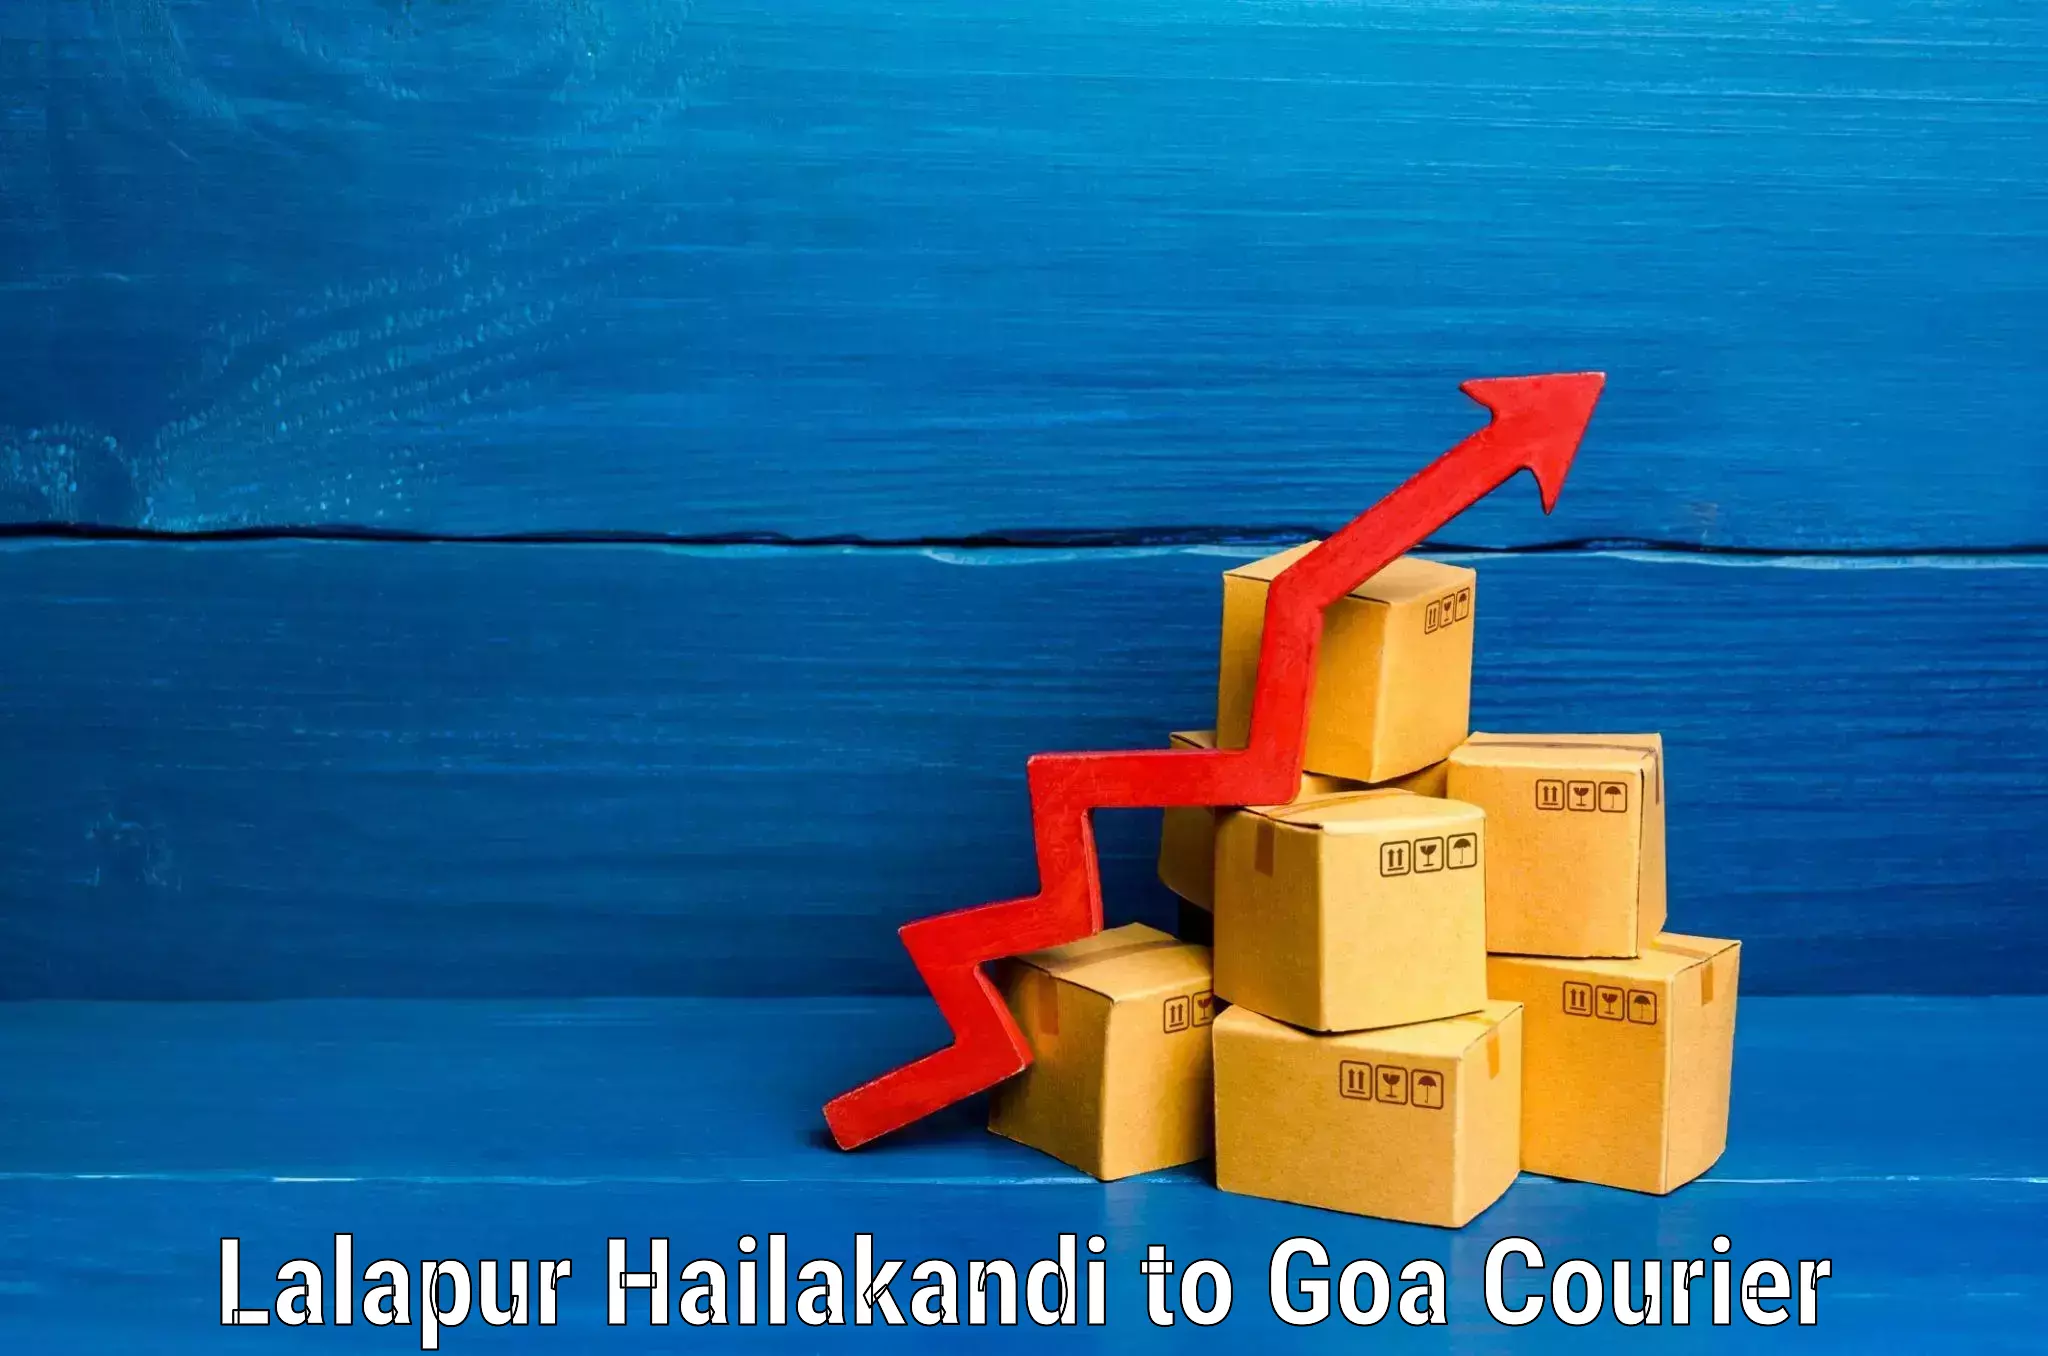 Luggage delivery system Lalapur Hailakandi to NIT Goa